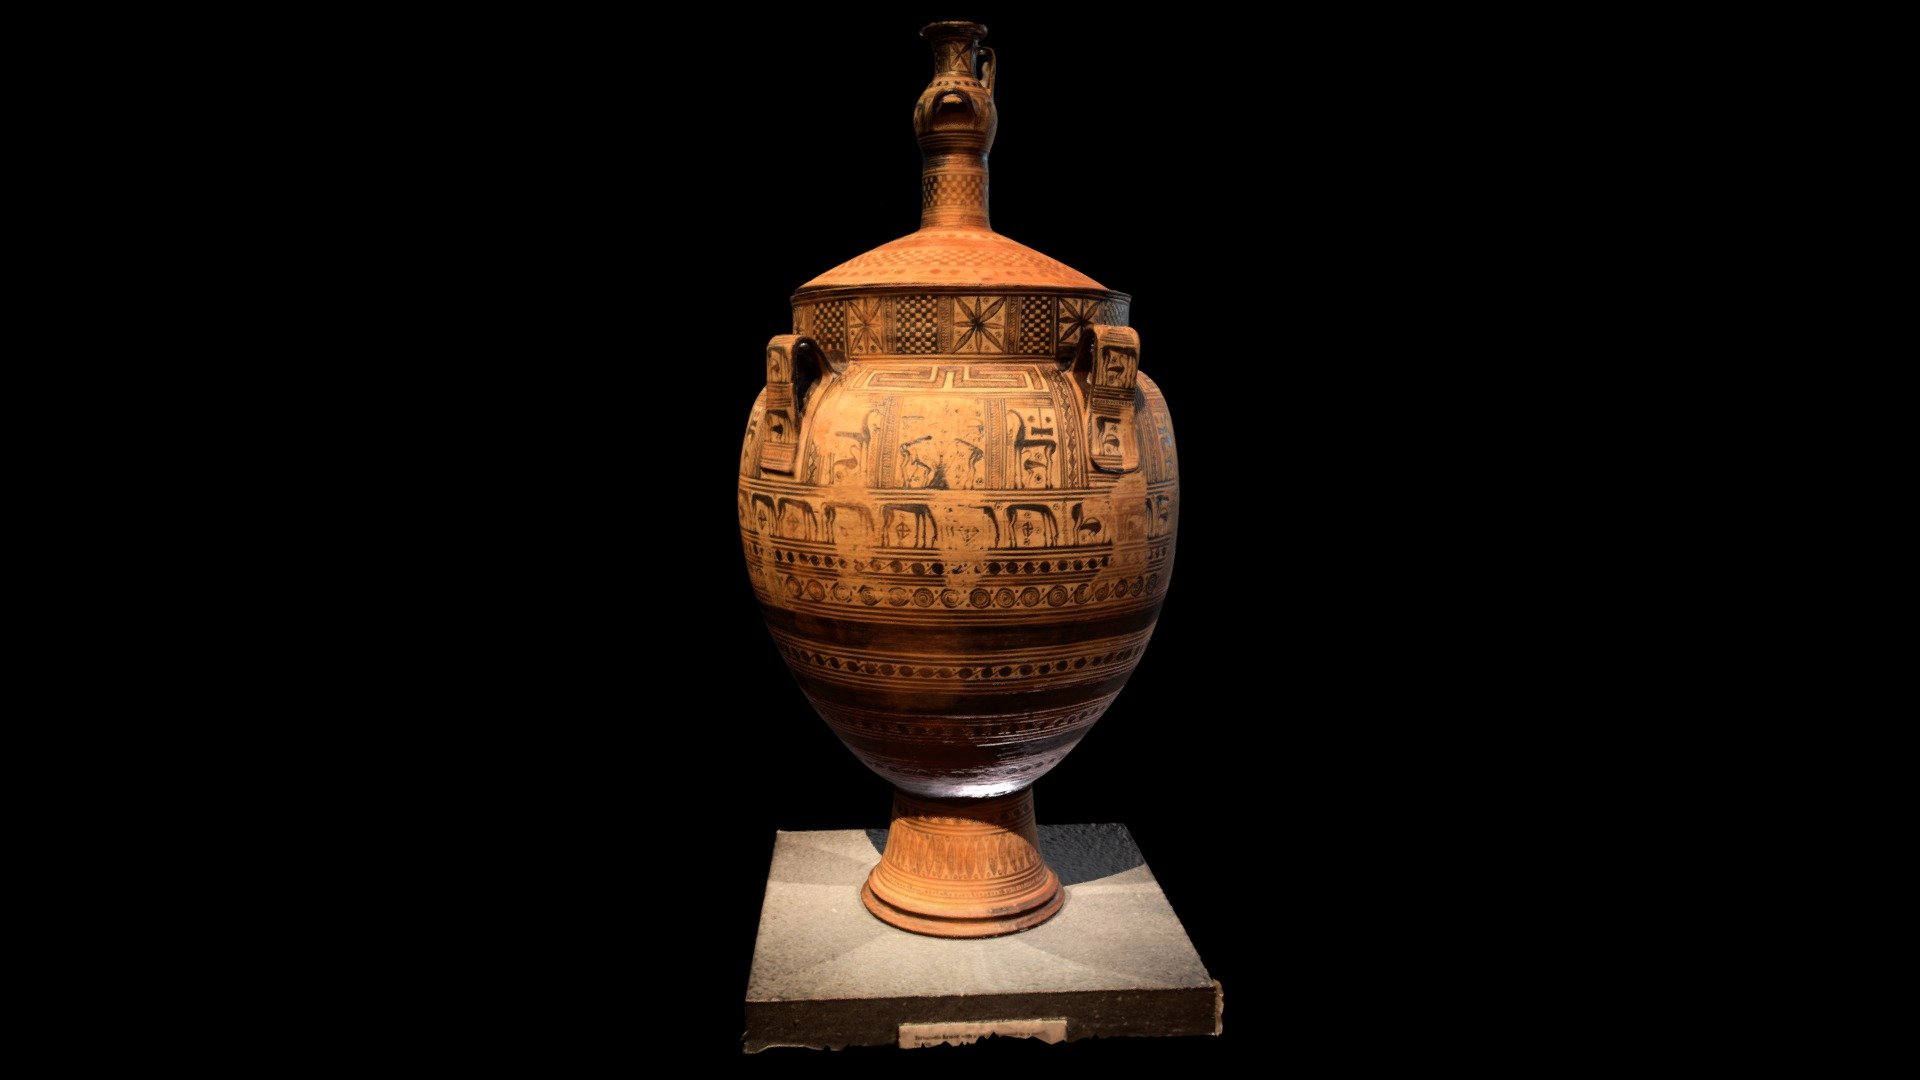 Greek Vase - Met Museum